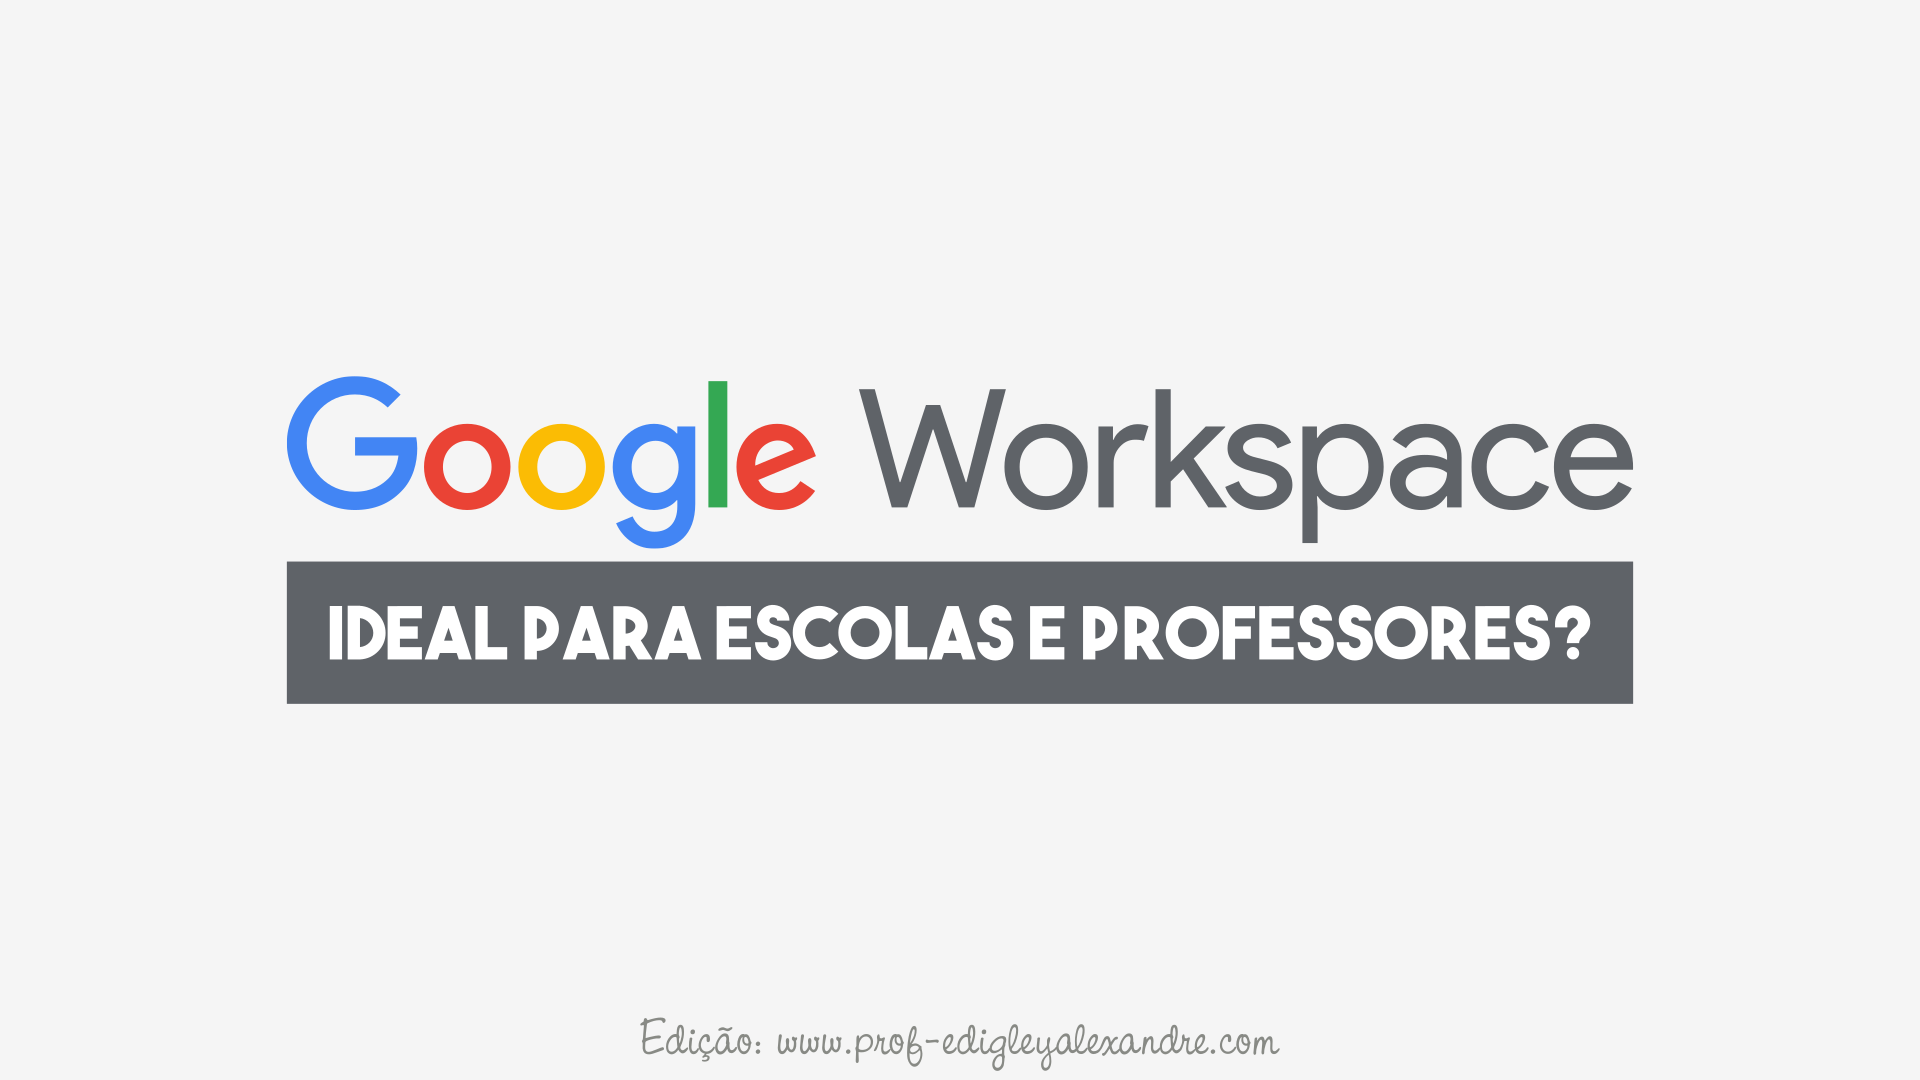 Google Workspace é ideal para escolas e professores?